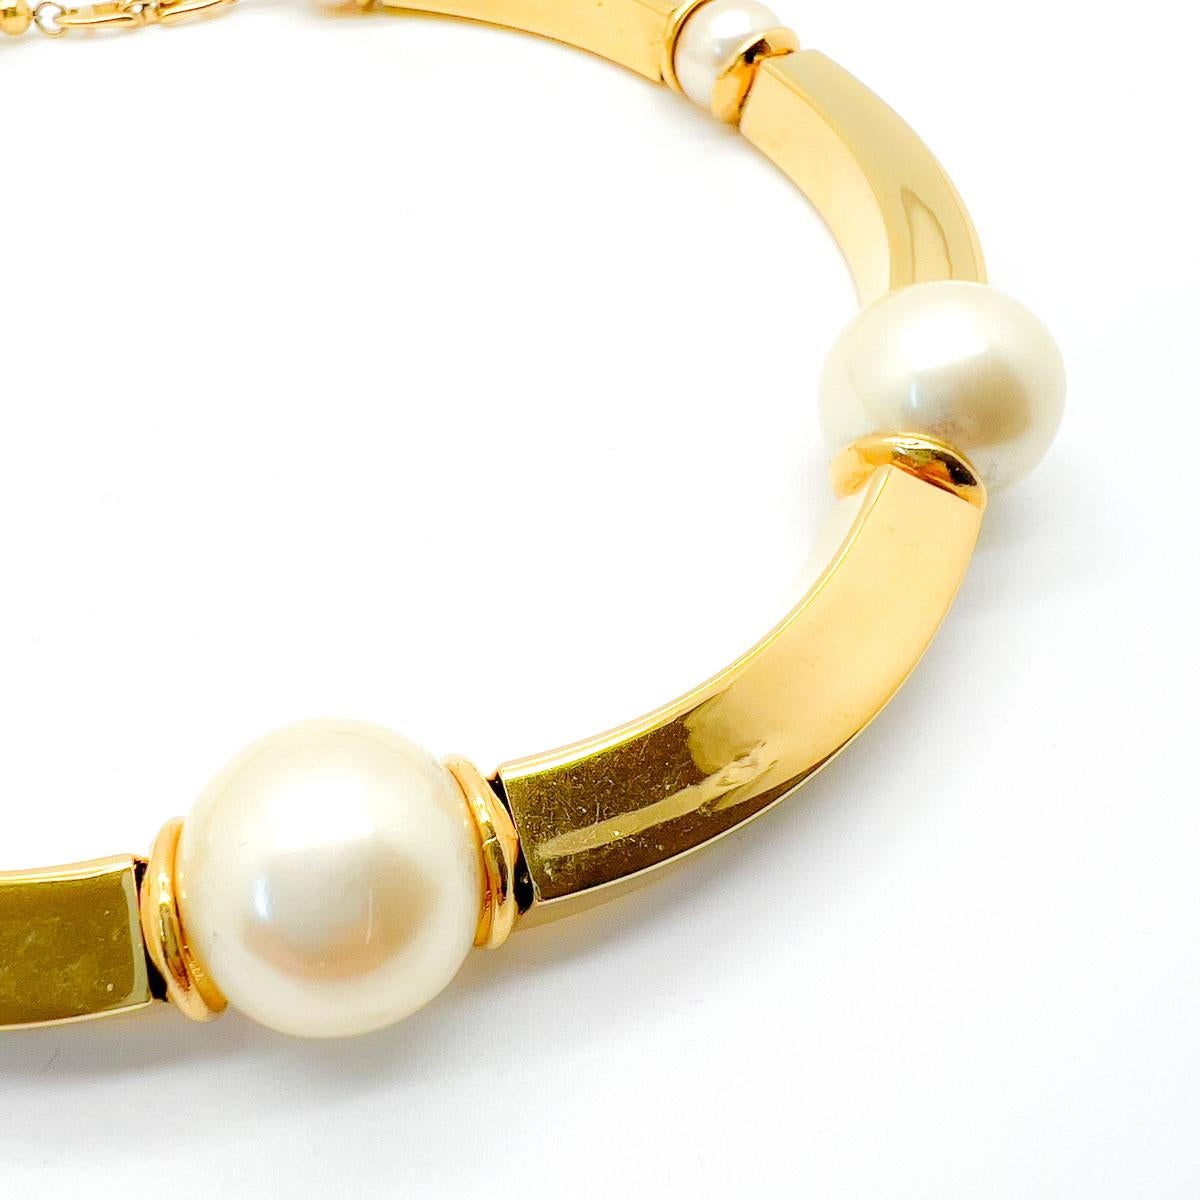 Un fabuleux collier de perles Napier Vintage. Barres d'or audacieuses et incurvées, entrecoupées d'énormes fausses perles. Intemporel et pourtant audacieux. Une trouvaille absolue de la maison Napier. Les origines de la Napier Jewellery Company